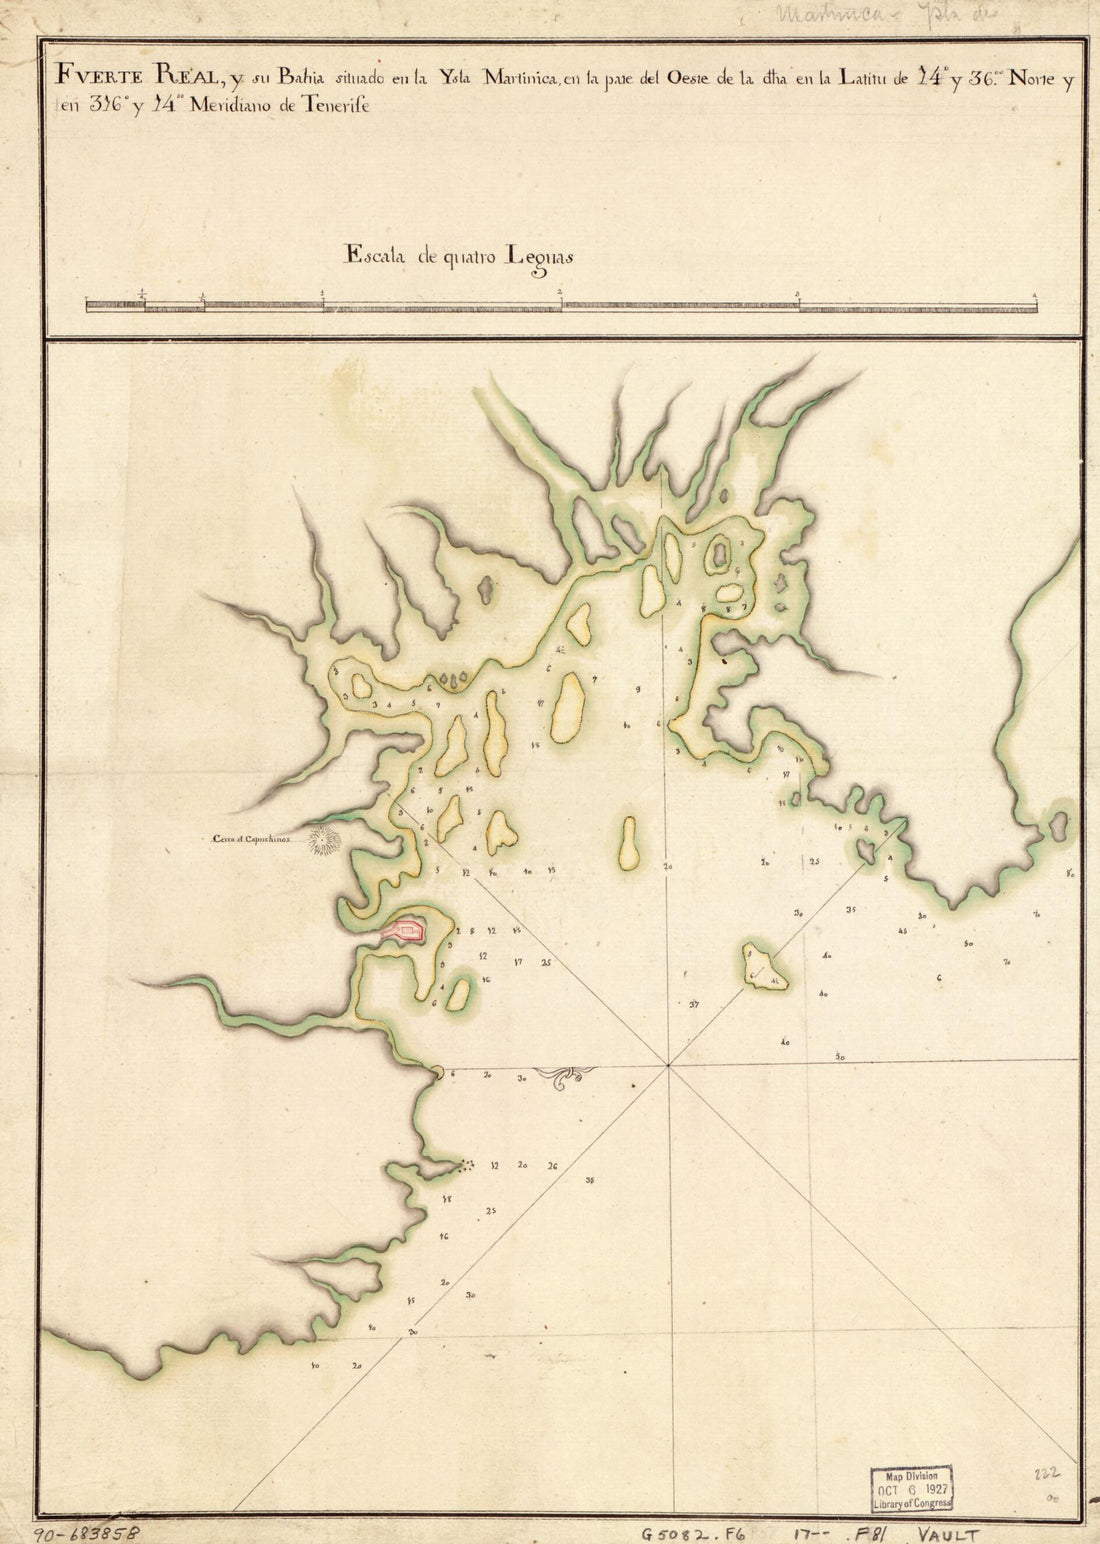 This old map of Fuerte Real En La Martinca : Bahía De Fuerte Real Situdao En La Ysla Martinica Por La Bando Del Oeste La Latd. De 14 Gs. 36 Ms. N. Y En La Longd. De 316 Gs. 14 Ms. Segn. El Meridiano De Thenerife  from 1700 was created by  in 1700